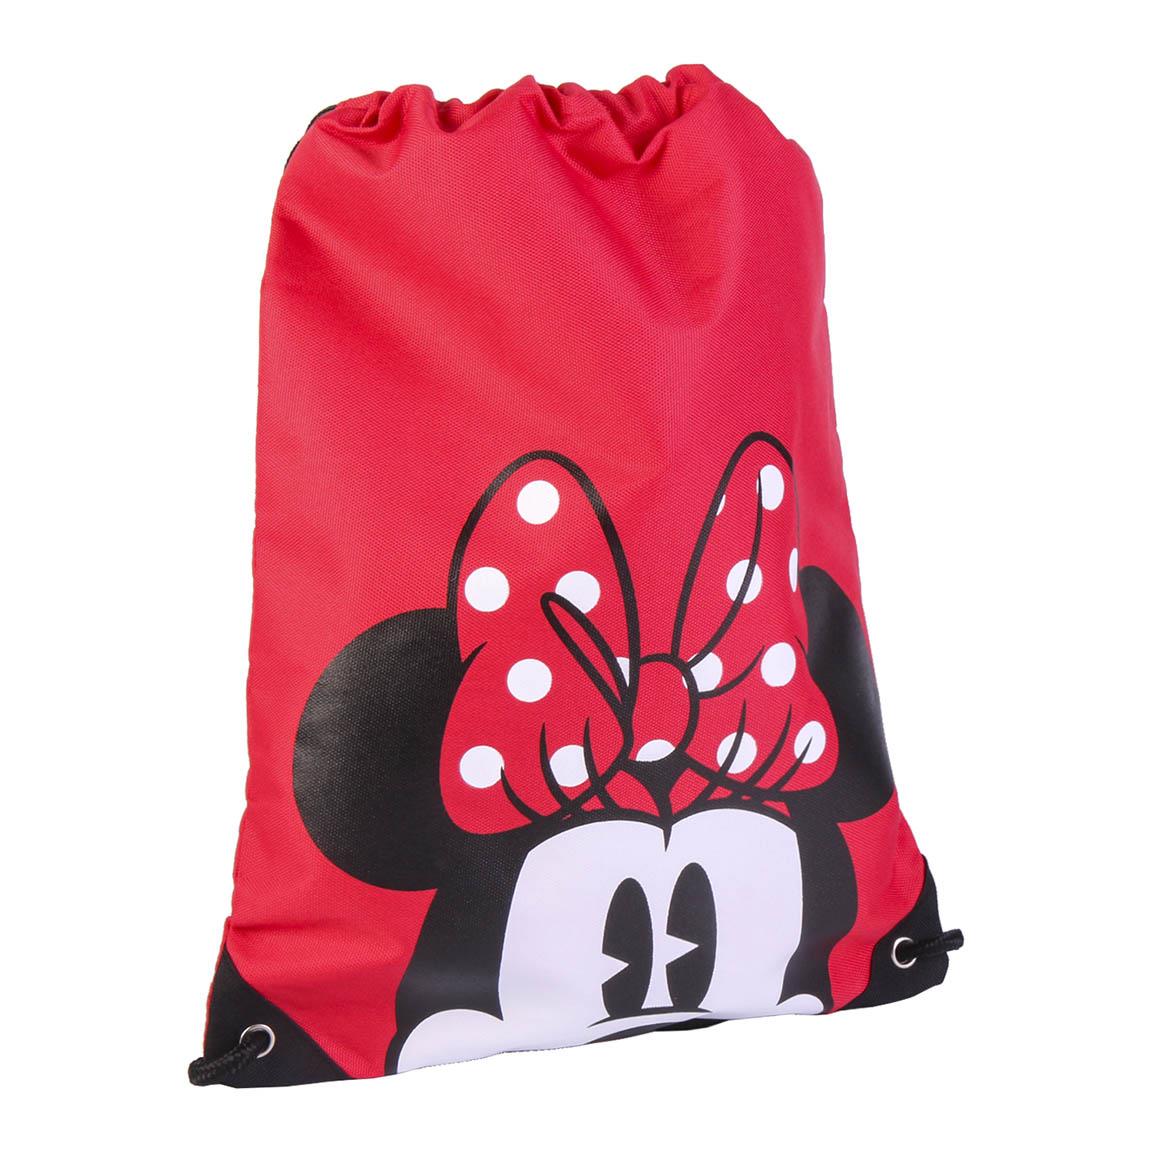 Turnbeutel mit Disney Minnie Mouse Aufdruck, Tasche, Gymbag, Sportbeutel, Jugendrucksack mit Kordelzug, Rot Maus